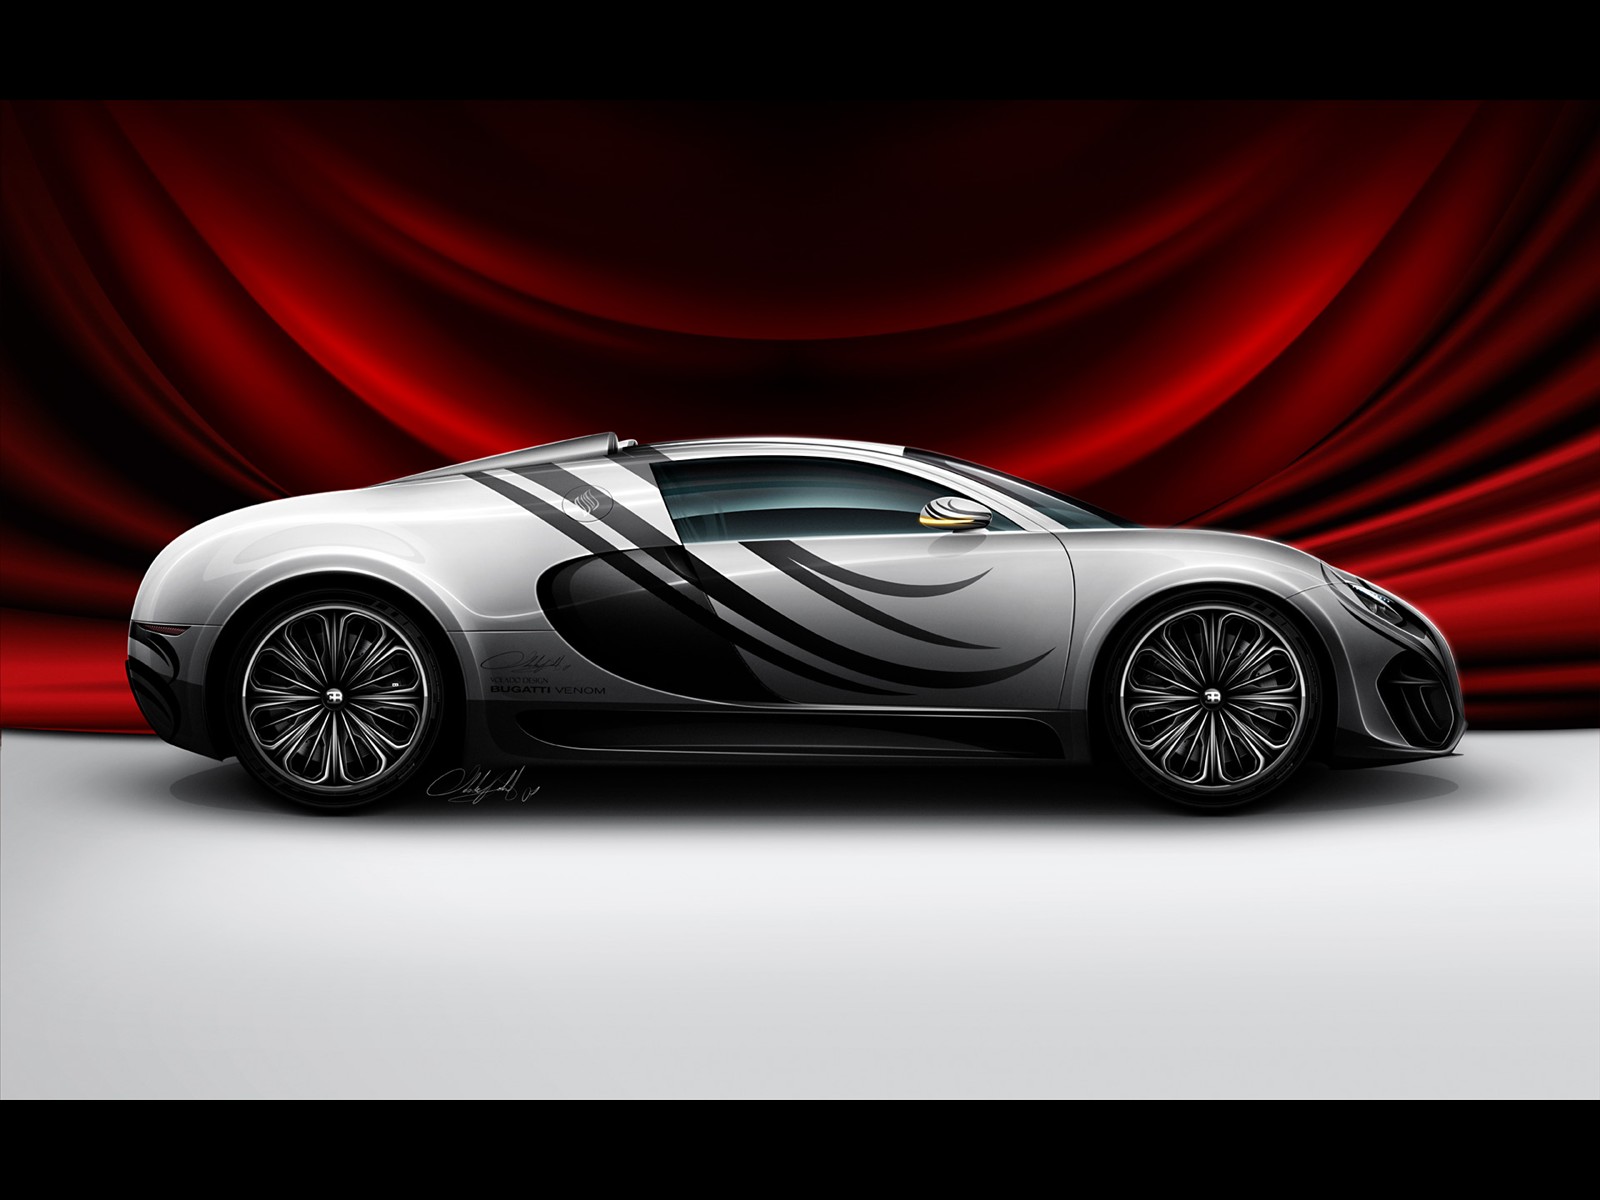 Bugatti Prototype on Free Cars Hd Wallpapers  Bugatti Venom Concept Car Hd Wall